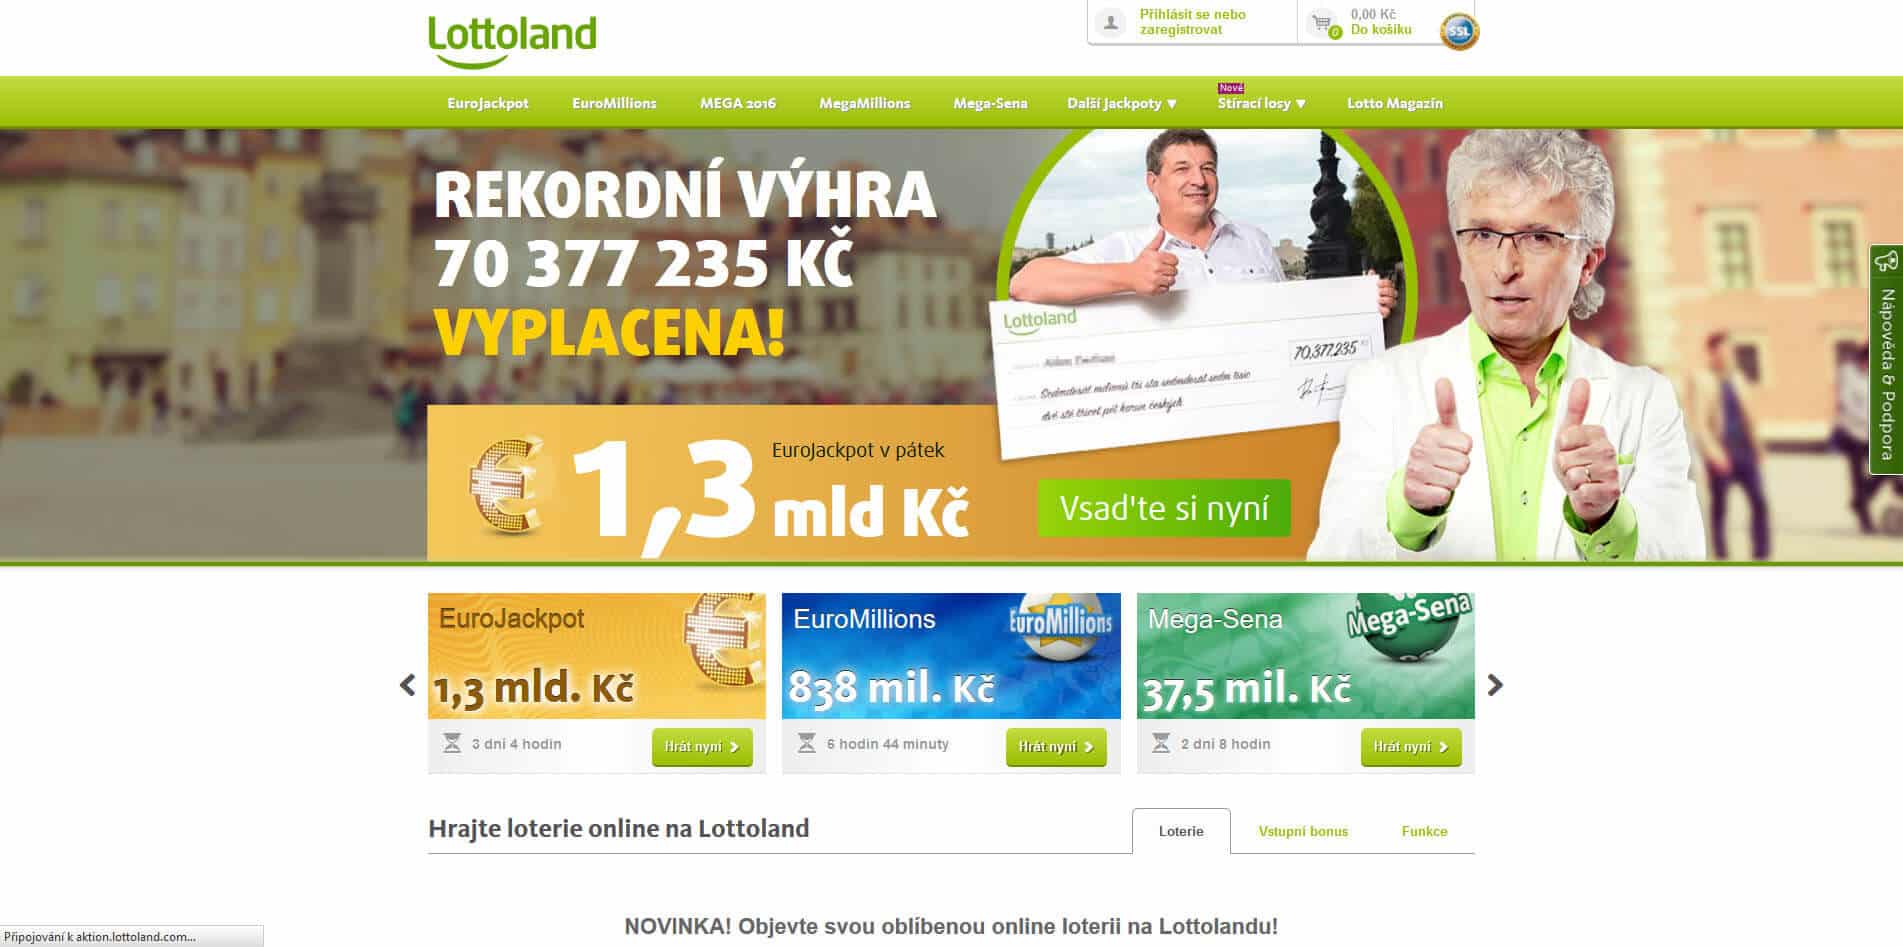 Obrázek loterijní společnosti Lottoland